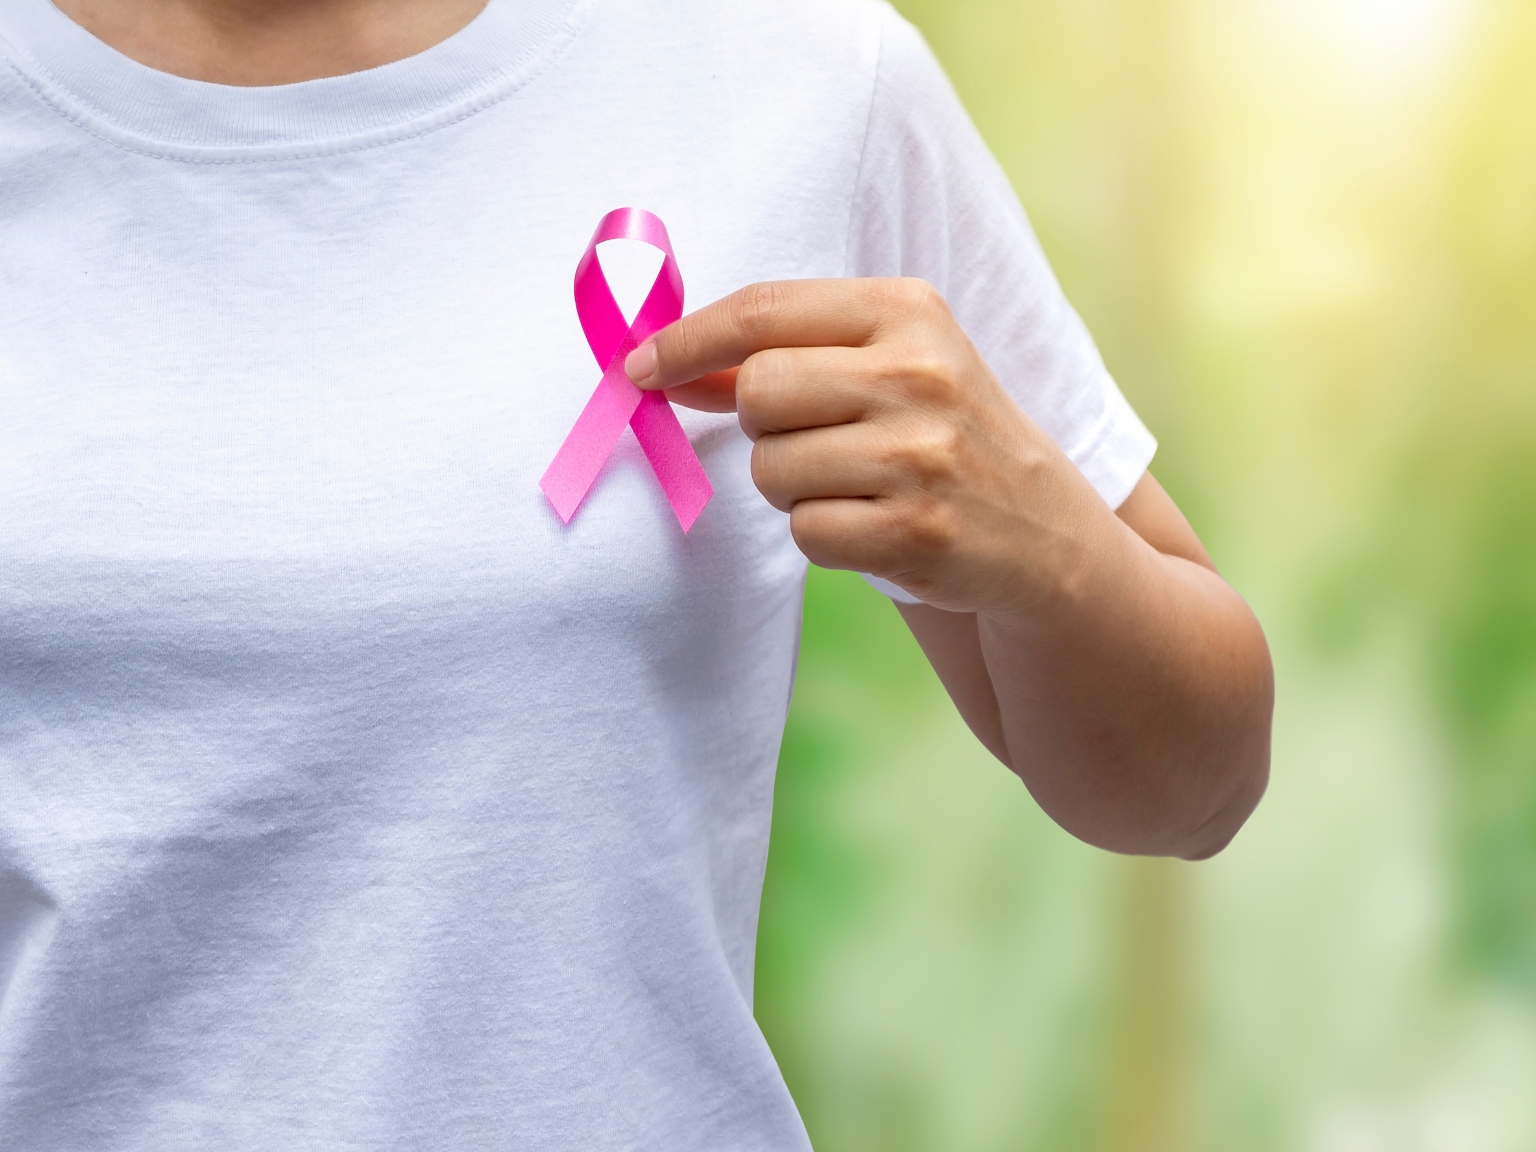 Cancerul de sân – Prevenire, Conștientizare și Puterea Controlului Periodic